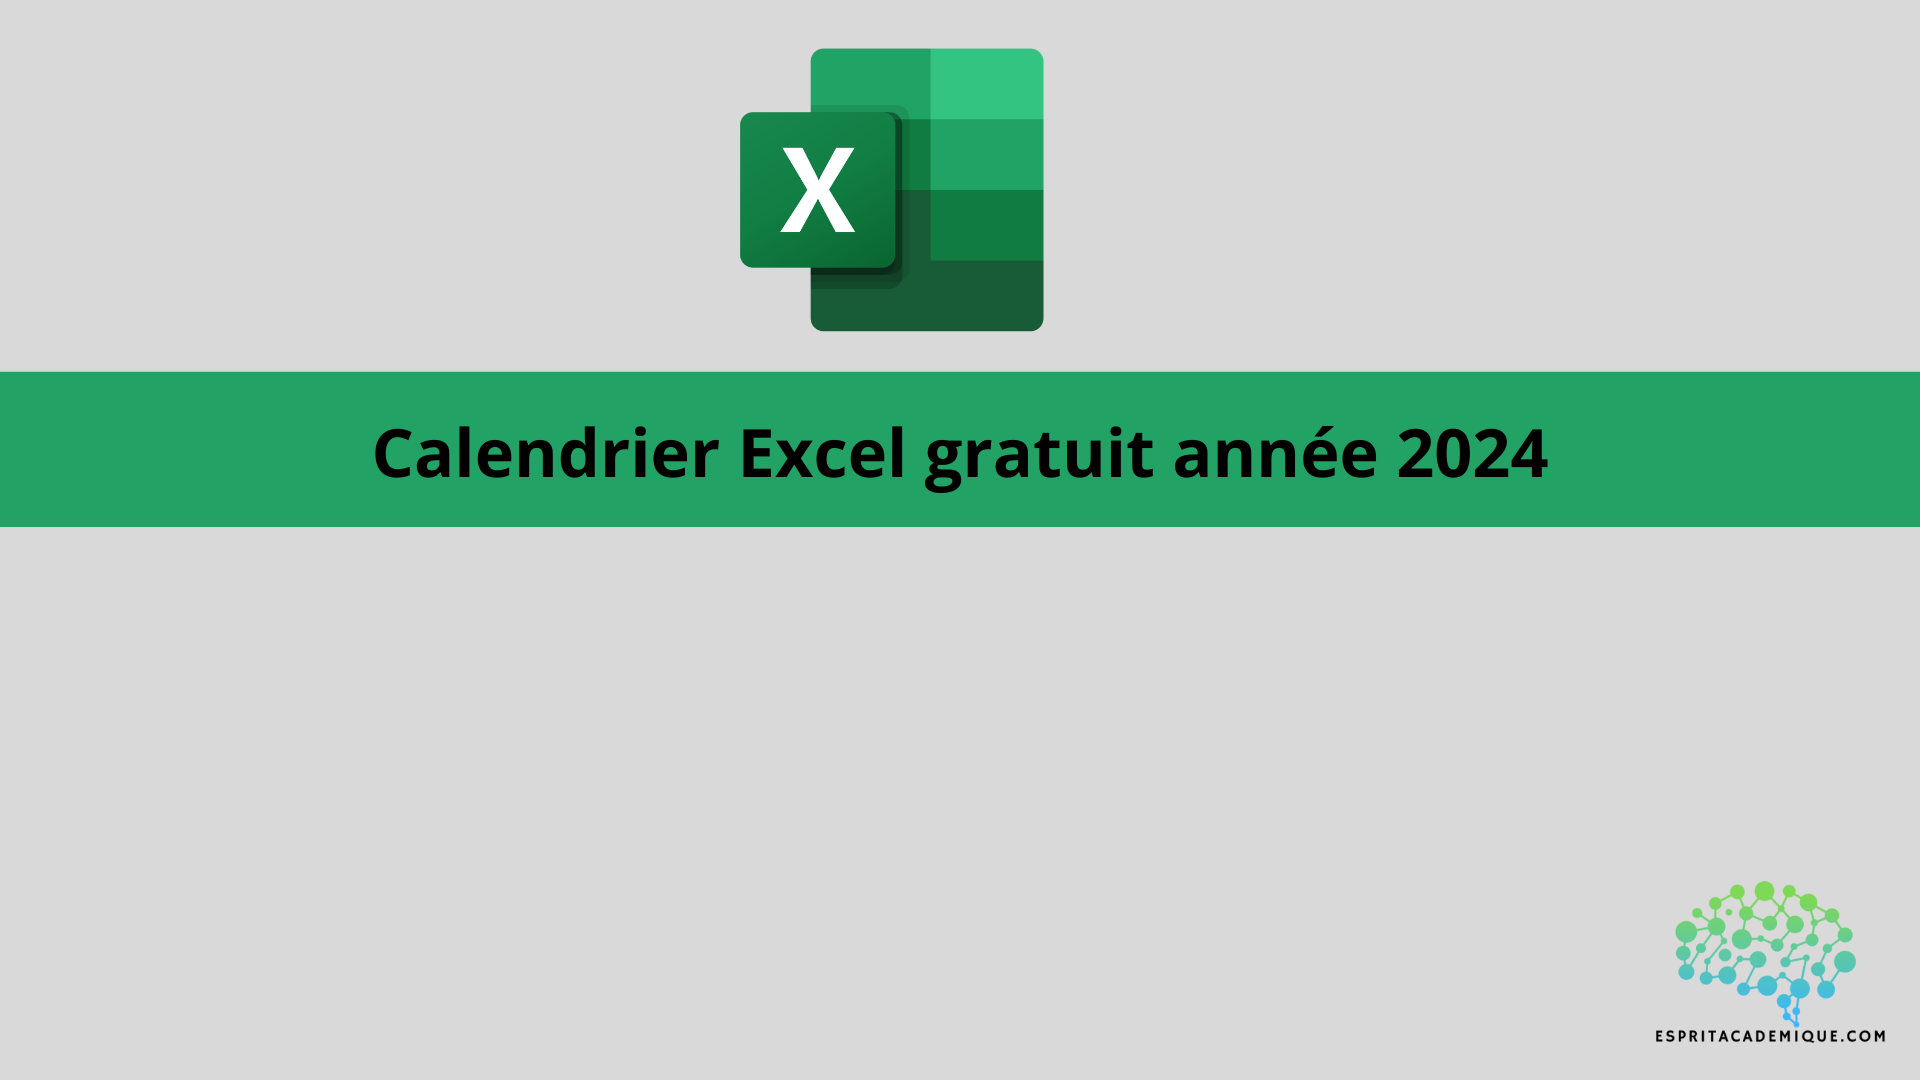 Calendrier Excel gratuit année 2024 – Espritacademique